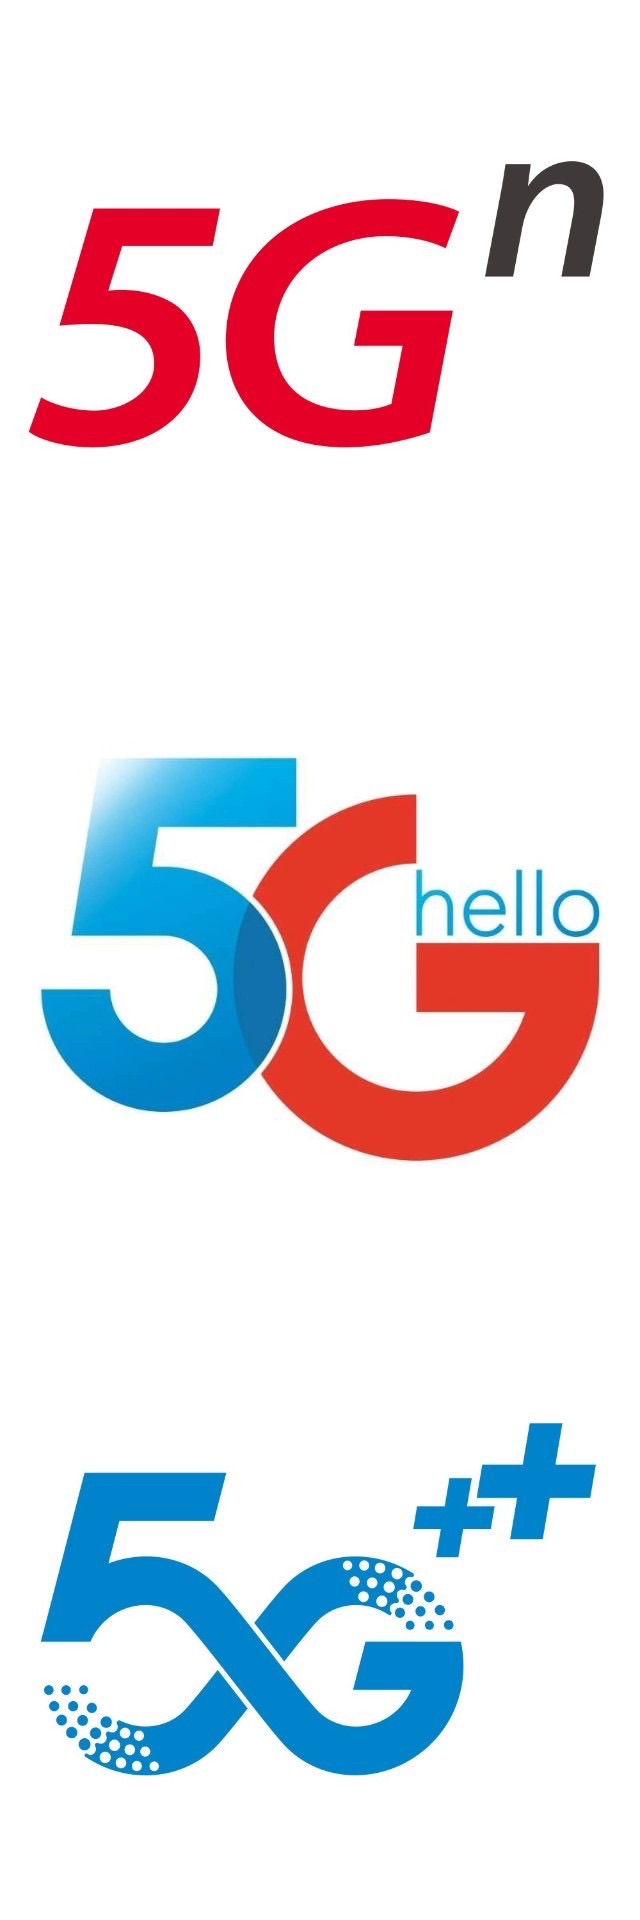 三家的5g logo,谁的更吸引人?